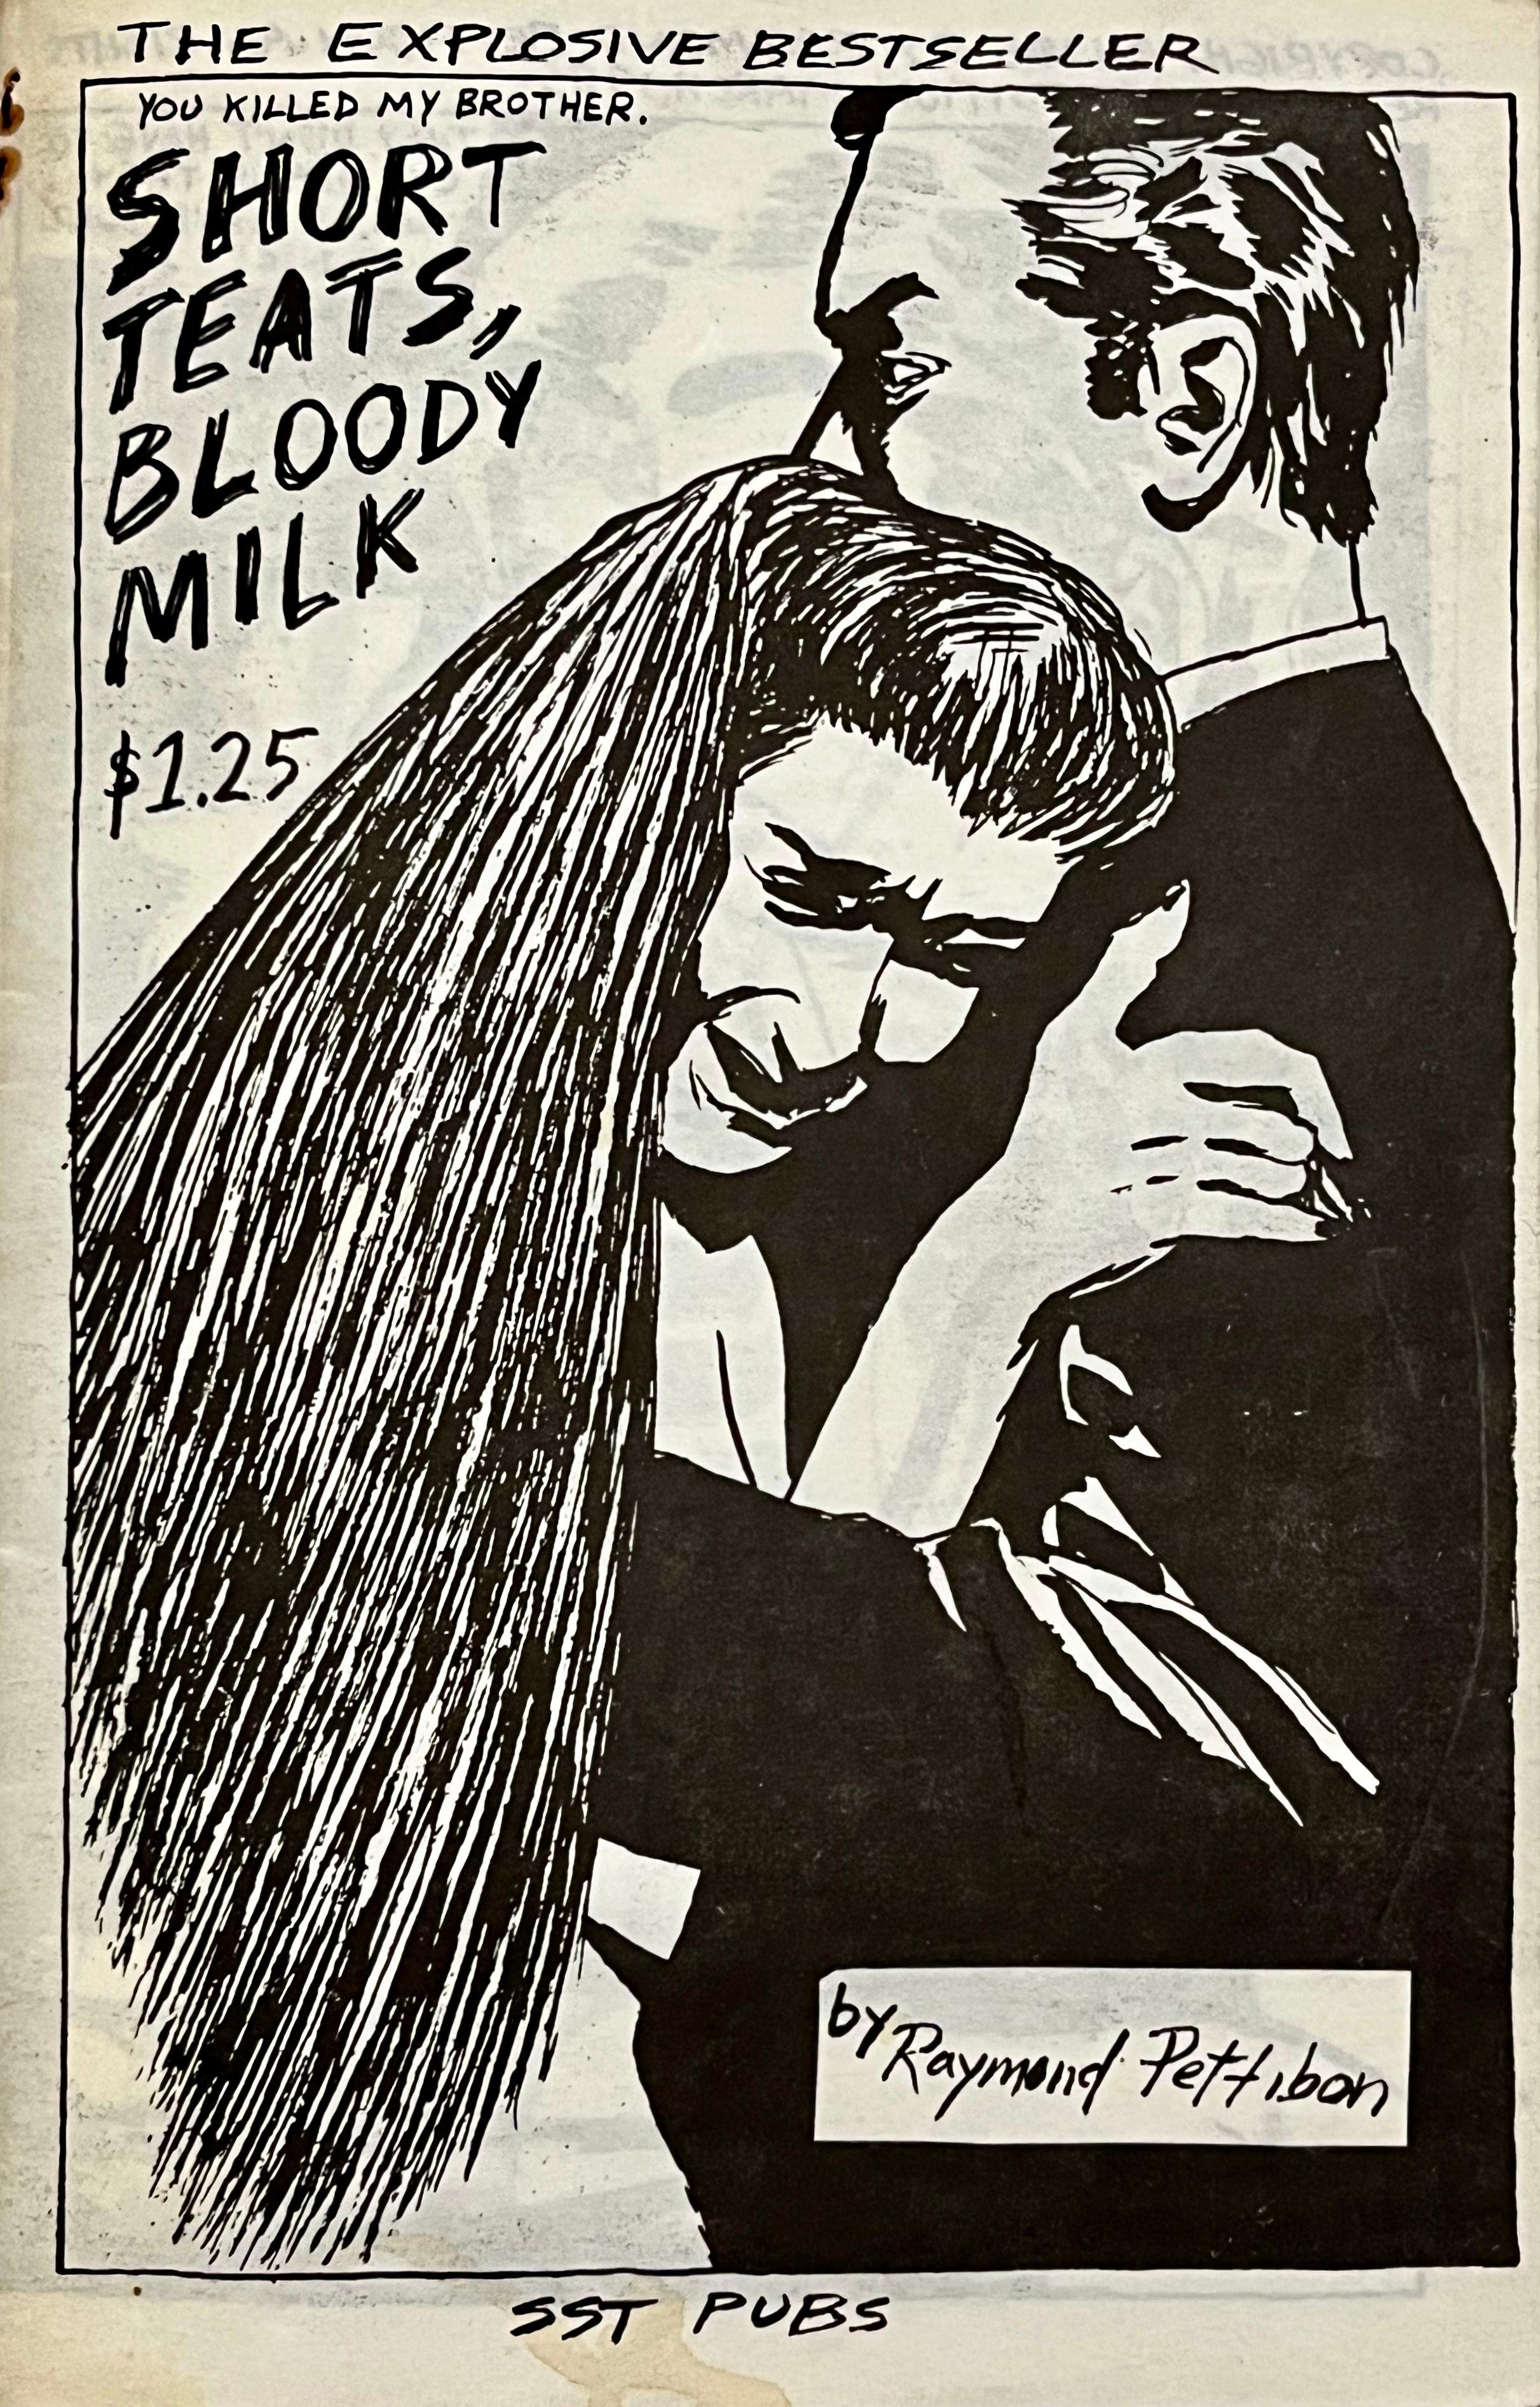 Raymond Pettibon Short Teats Bloody Milk 1985 (zine de Raymond Pettibon) :
Ce livre d'artiste/zine de Raymond Pettibon datant de 1985 et intitulé Short Teats, Bloody Milk comprend plus de vingt dessins évocateurs de femmes fatales, de détectives, de